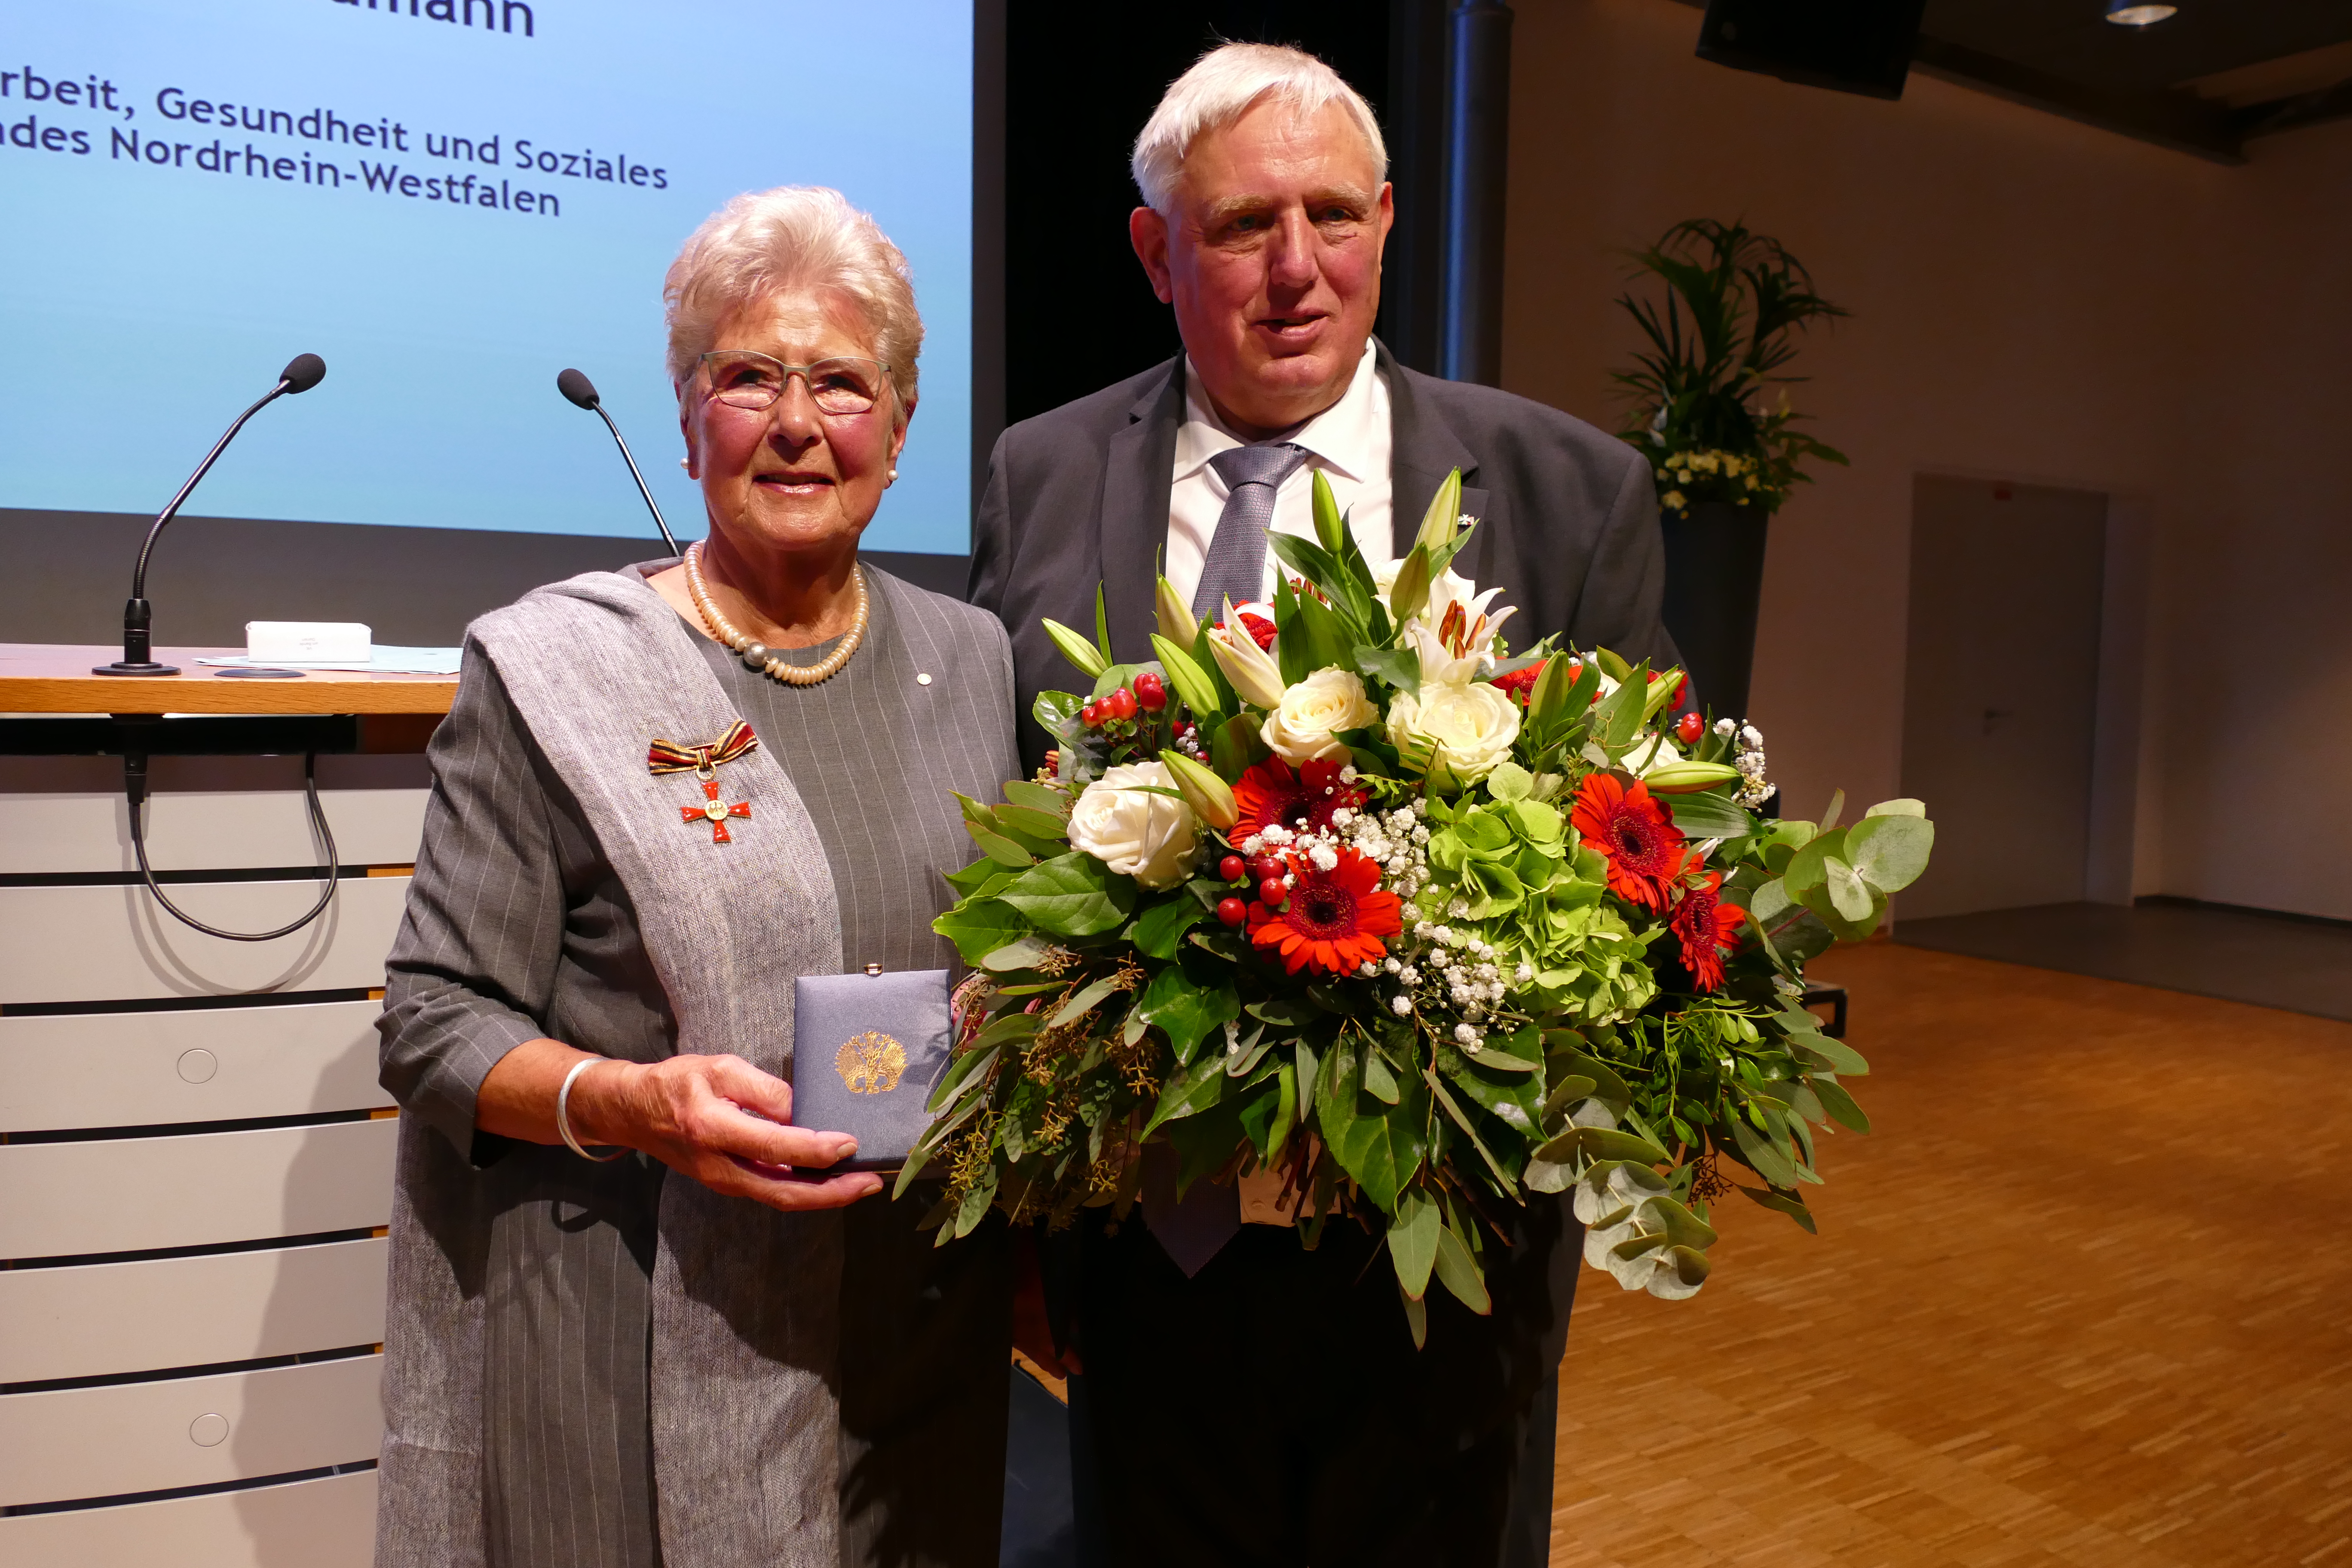 Minister Laumann überreicht Bundesverdienstkreuz an Anneliese Meyer zu Altenschildesche für ihr bürgerschaftliches Engagement in der Stadt Emsdetten